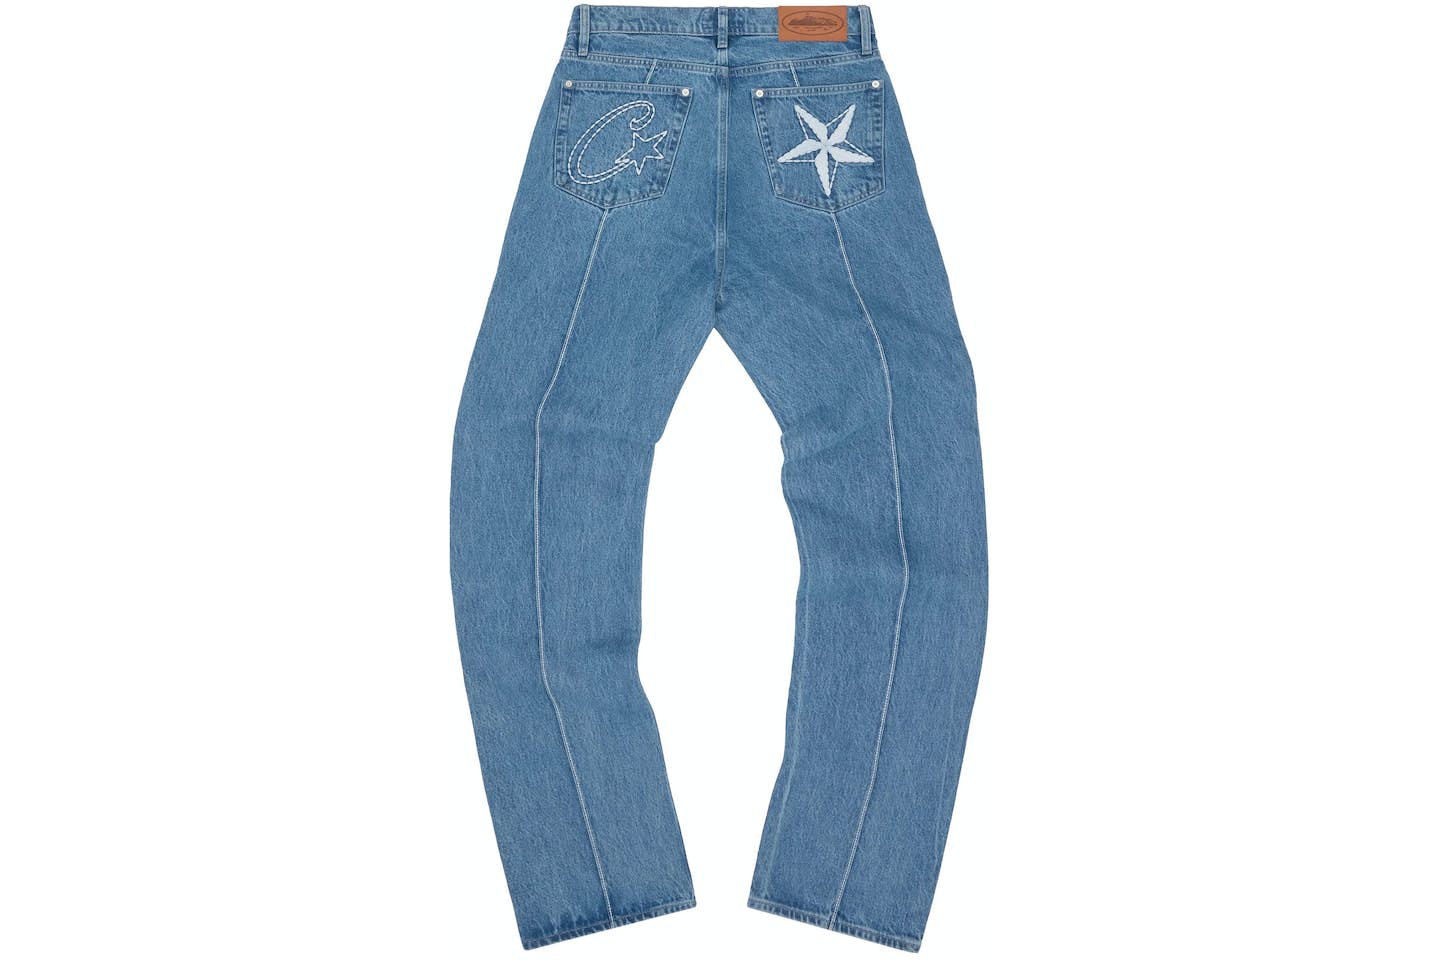 Corteiz C-Star Denim Jeans
Blue